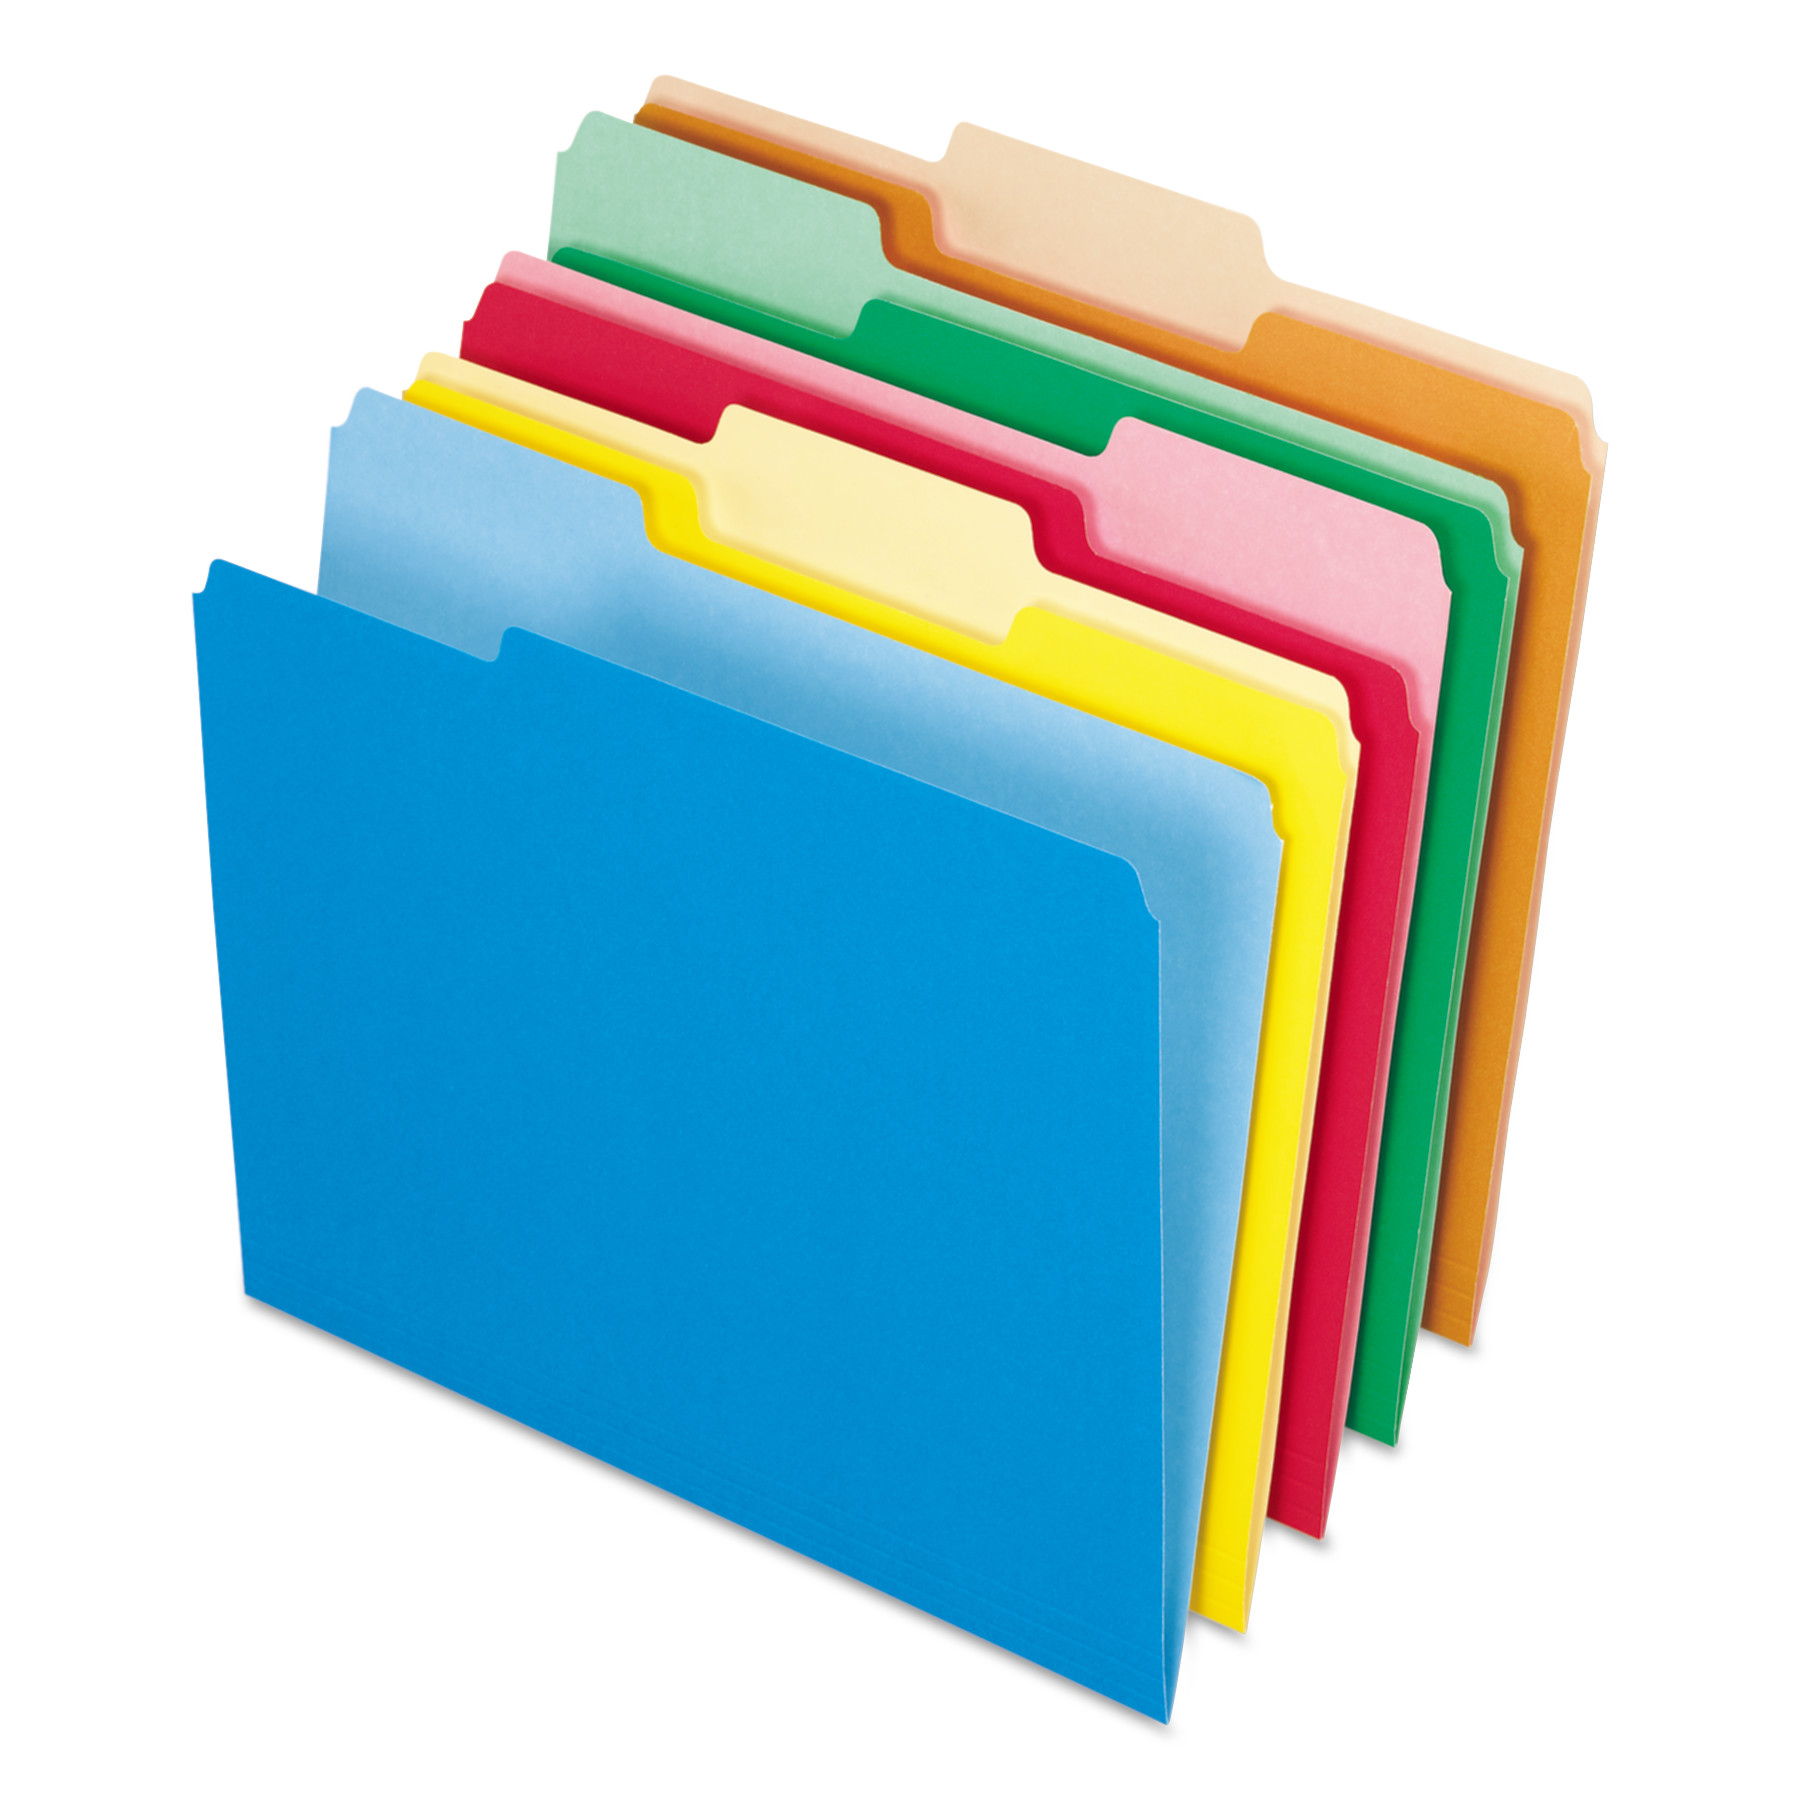  Pendaflex 4210 1/3 ASST Interior File Folders, 1/3-Cut Tabs, Letter Size, Assortment 2, 100/Box (PFX421013ASST) 